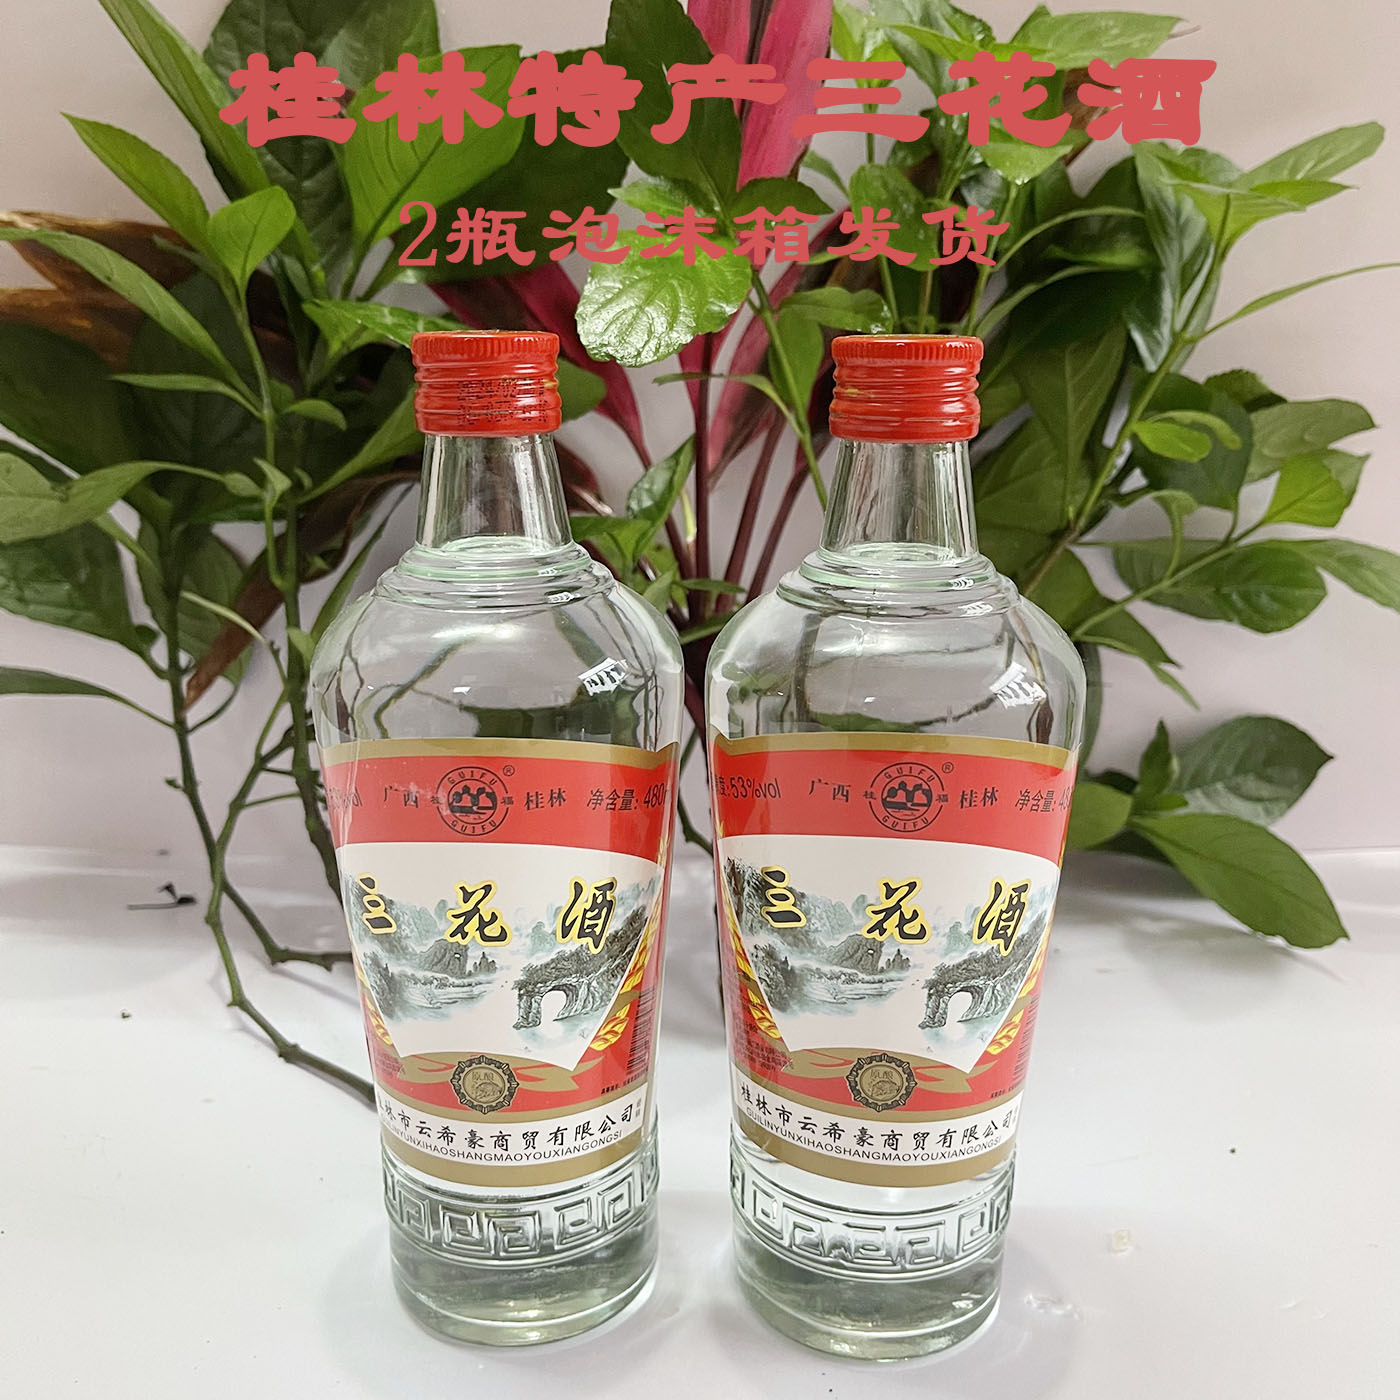 桂林经典三花酒53度480ml/瓶高度米香型白酒玻璃瓶装广西桂林特产 - 图2